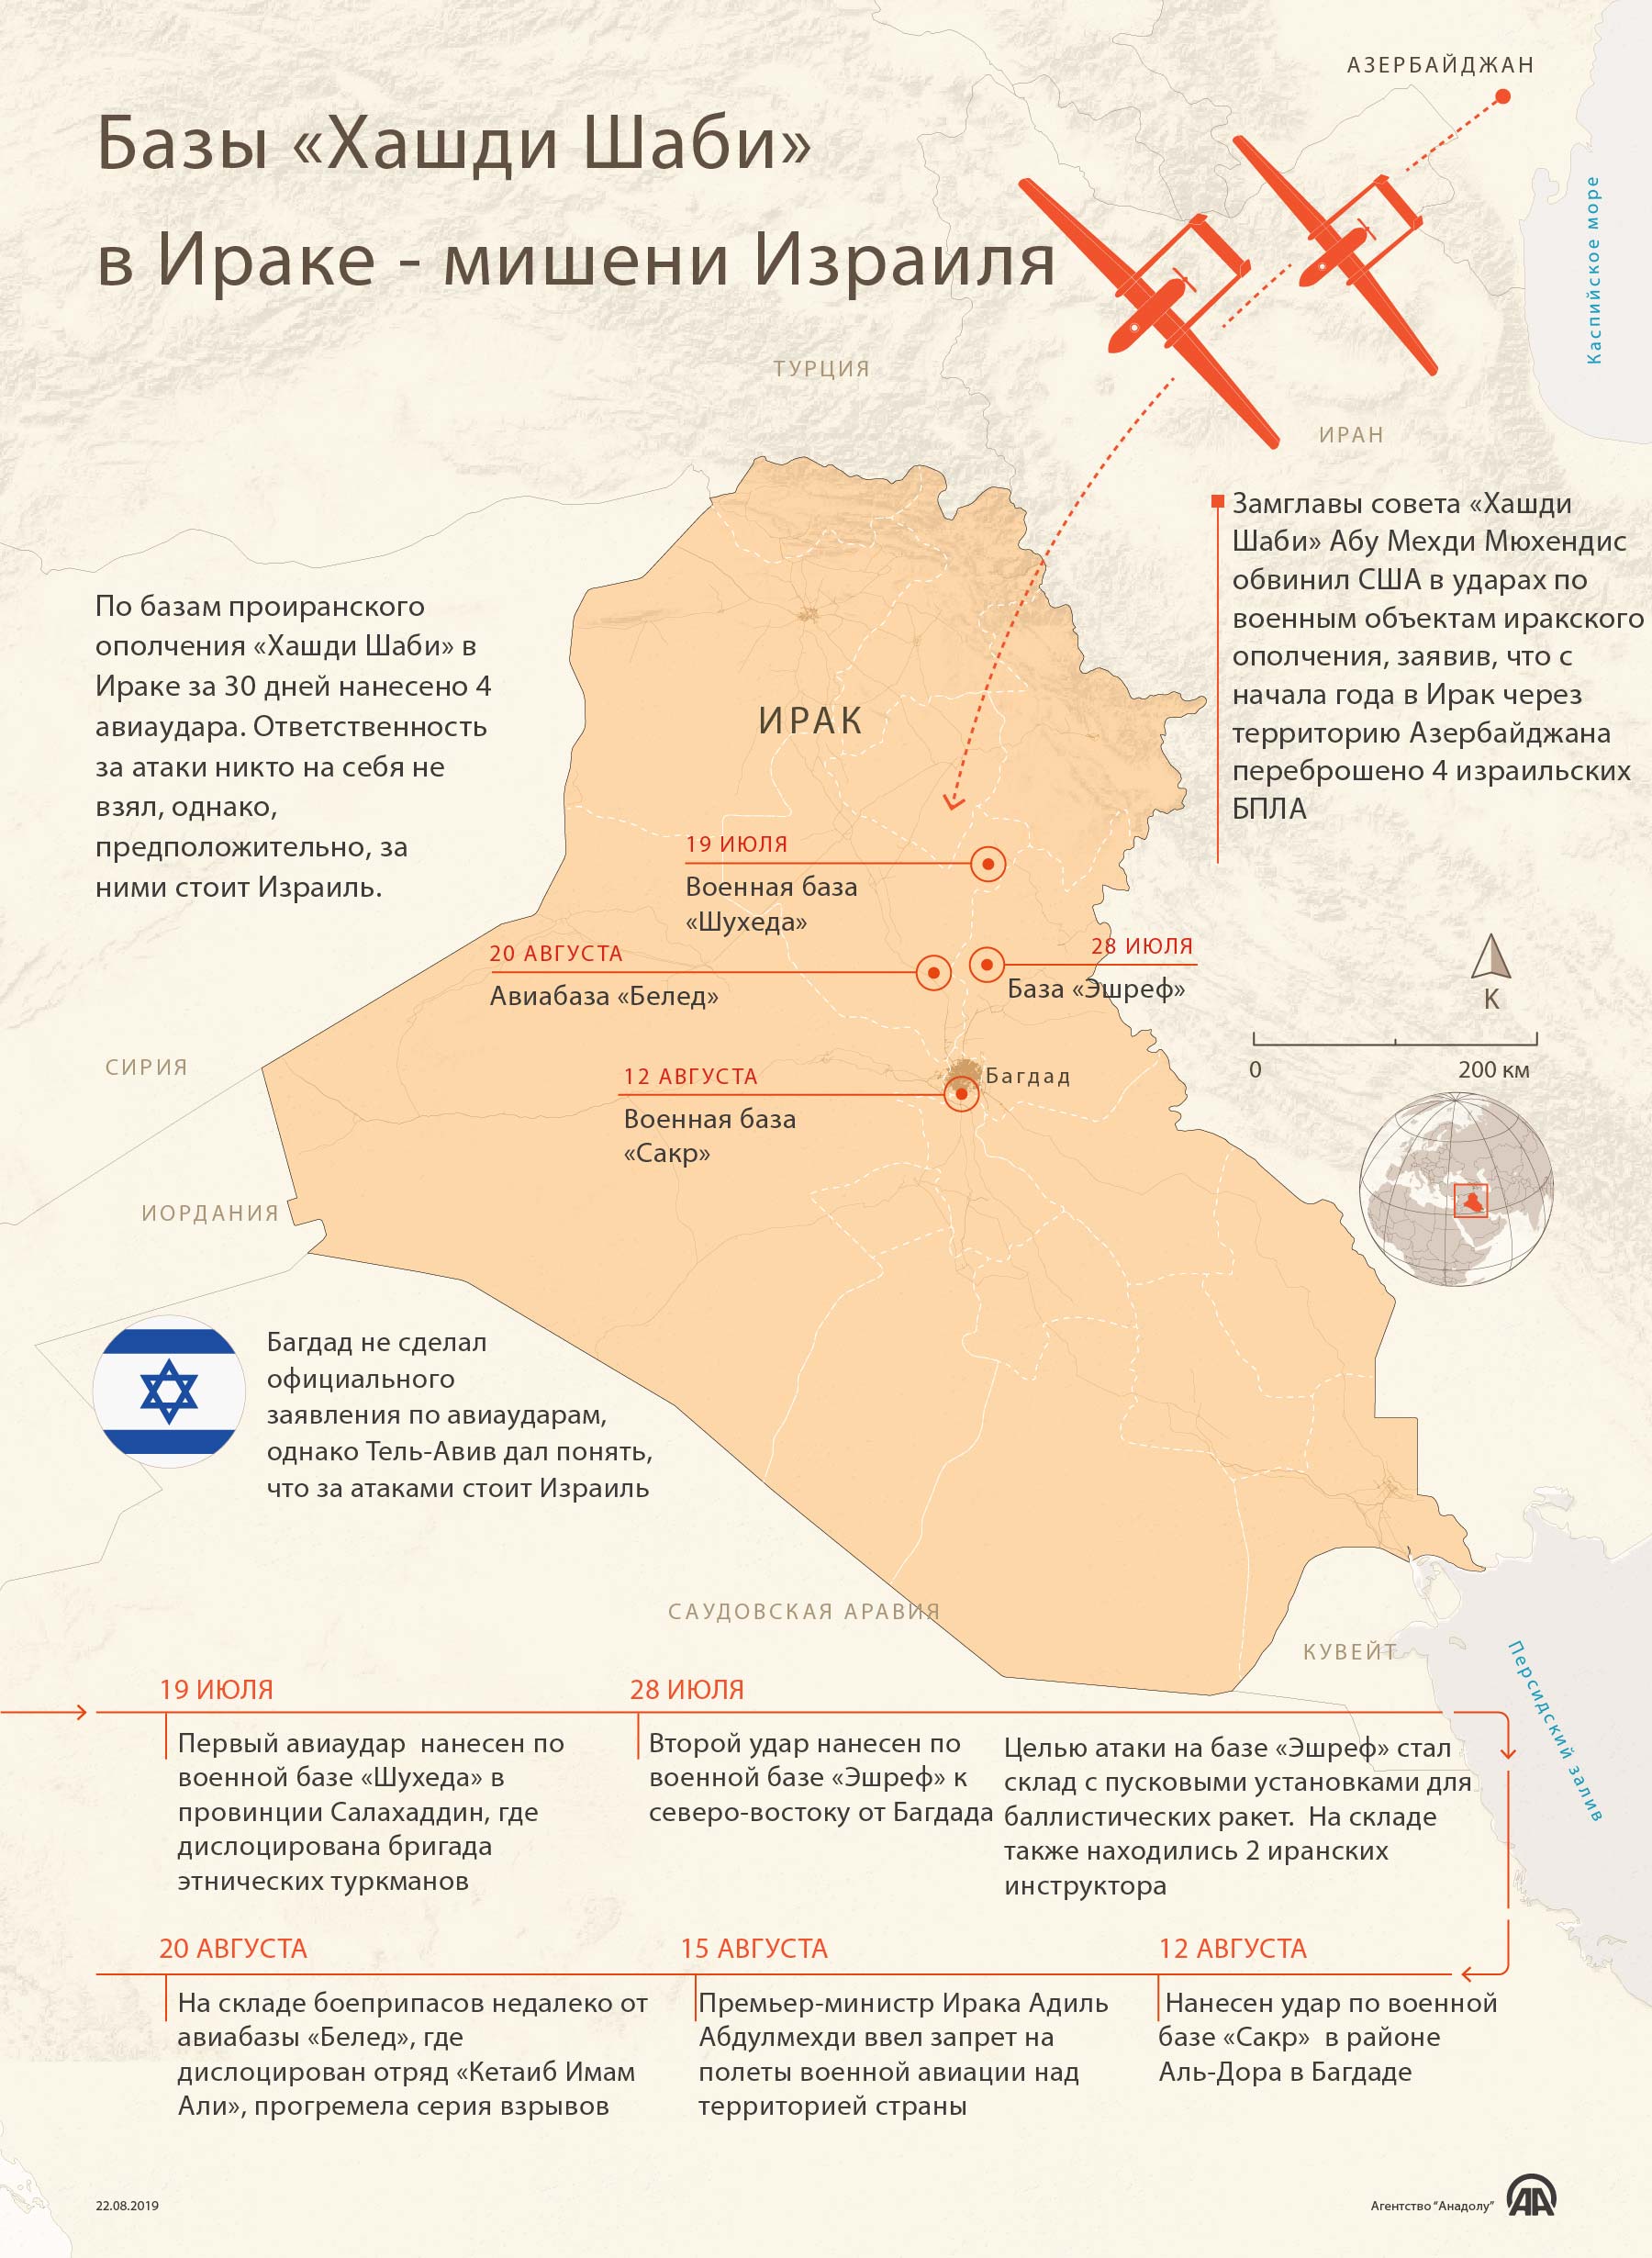 Базы «Хашди Шаби» в Ираке — мишени Израиля